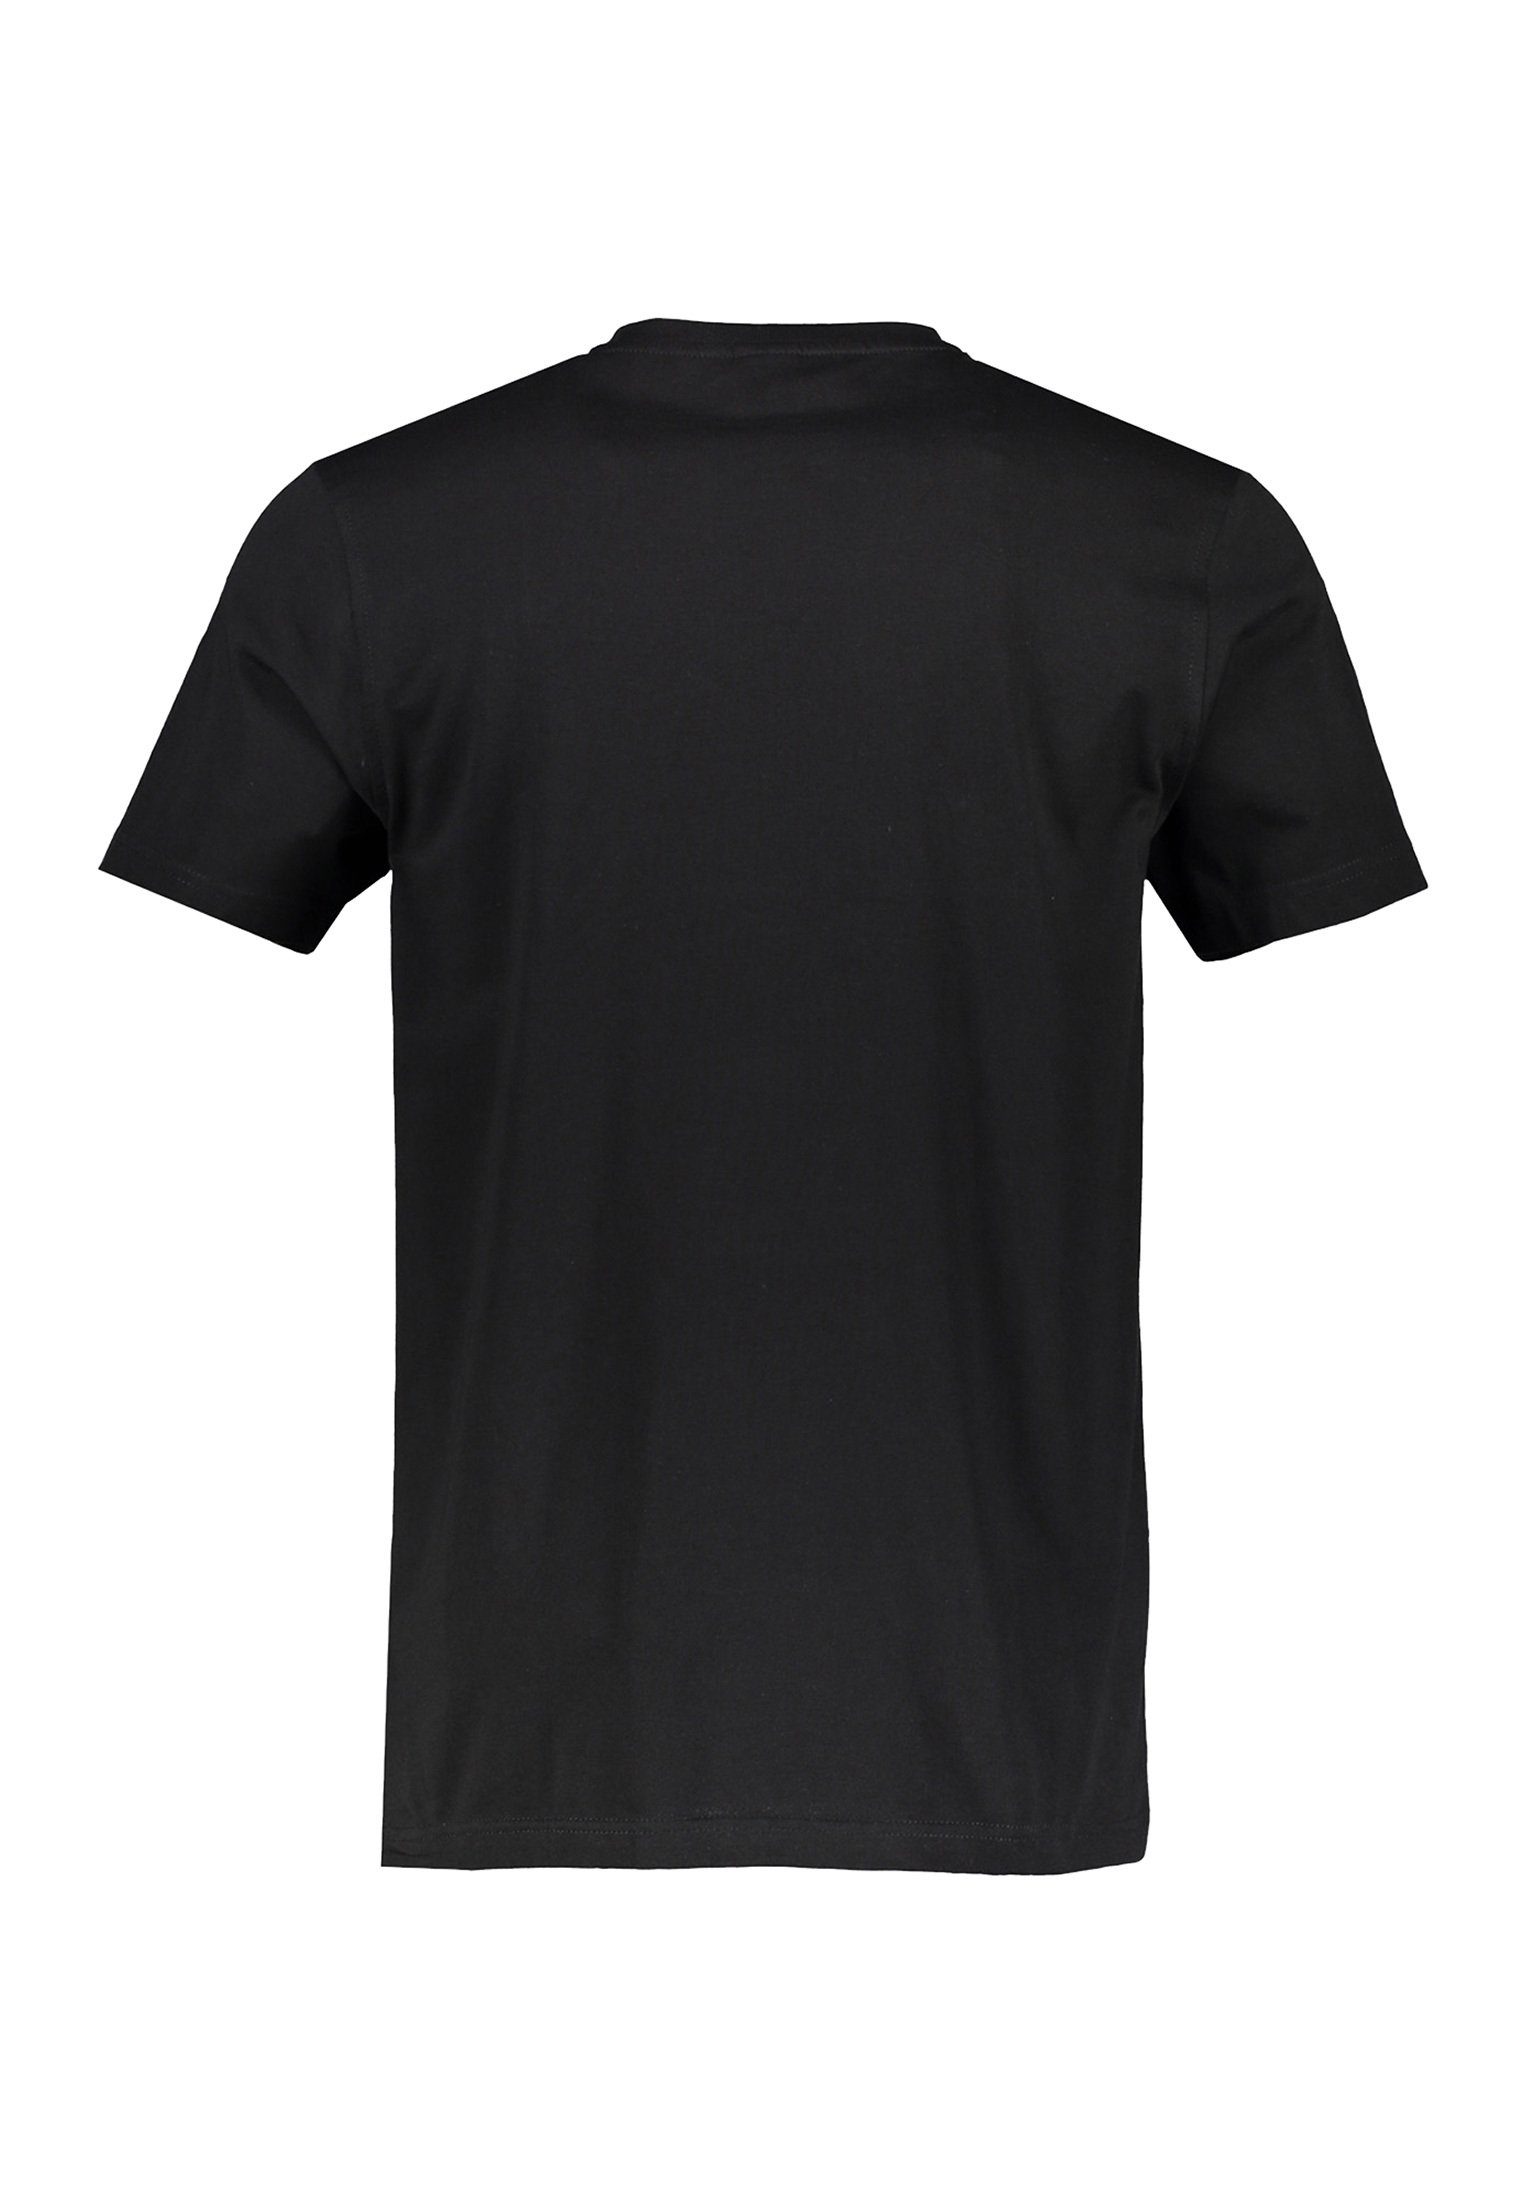 LERROS T-Shirt BLACK Rundhals T-Shirt Doppelpack Baumwollqualität in Premium LERROS